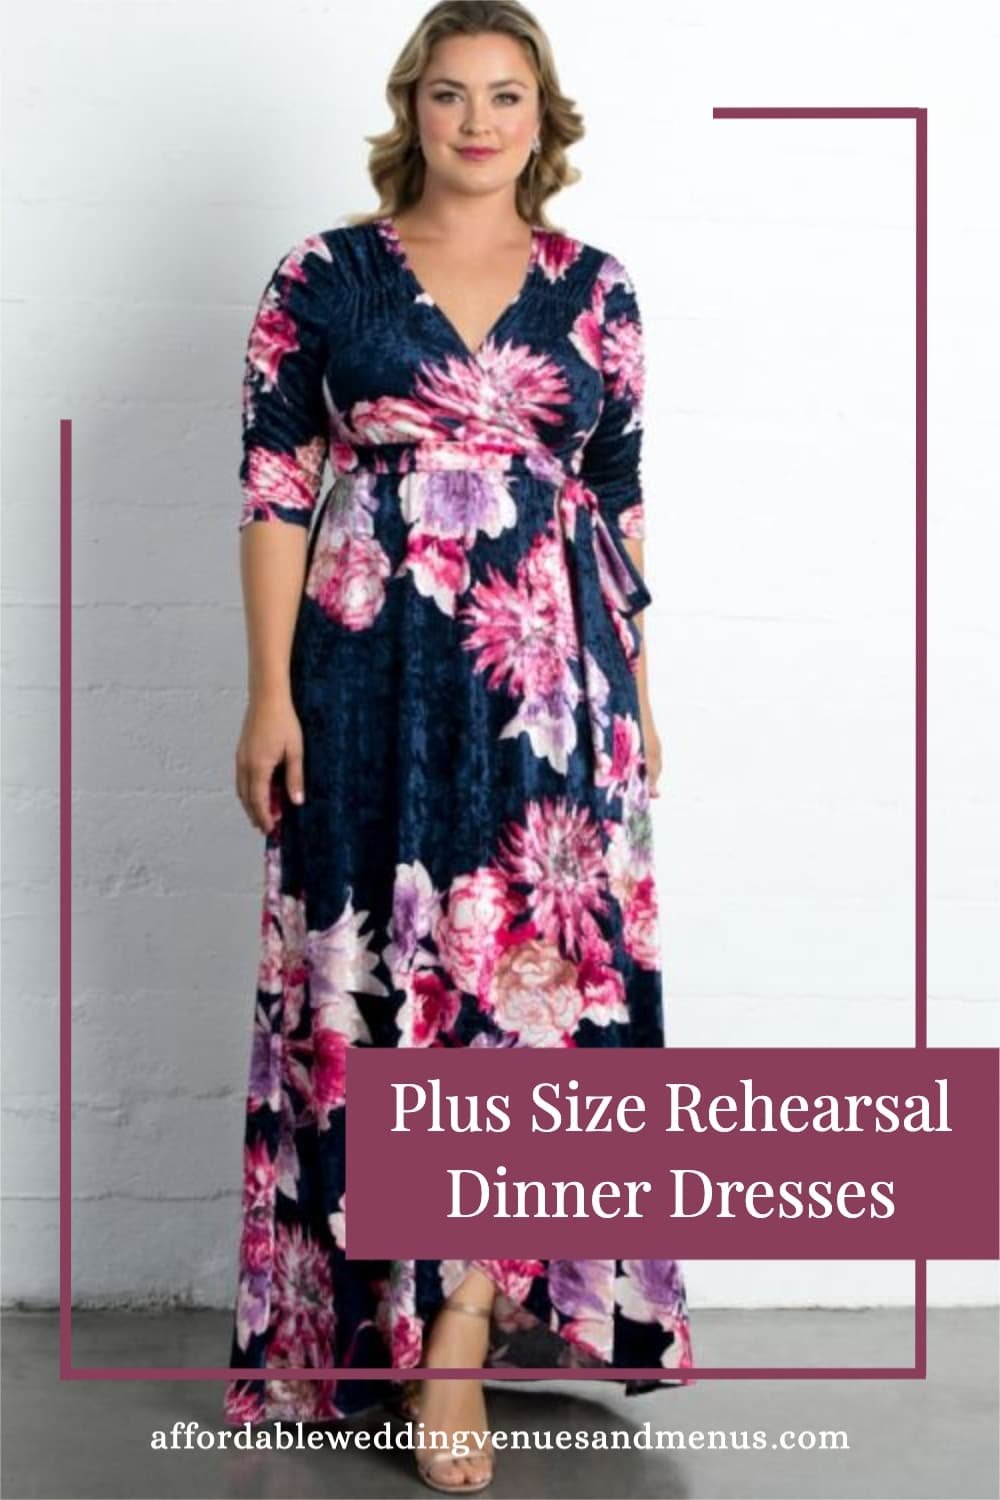 Plus Size Rehearsal Dinner Dresses